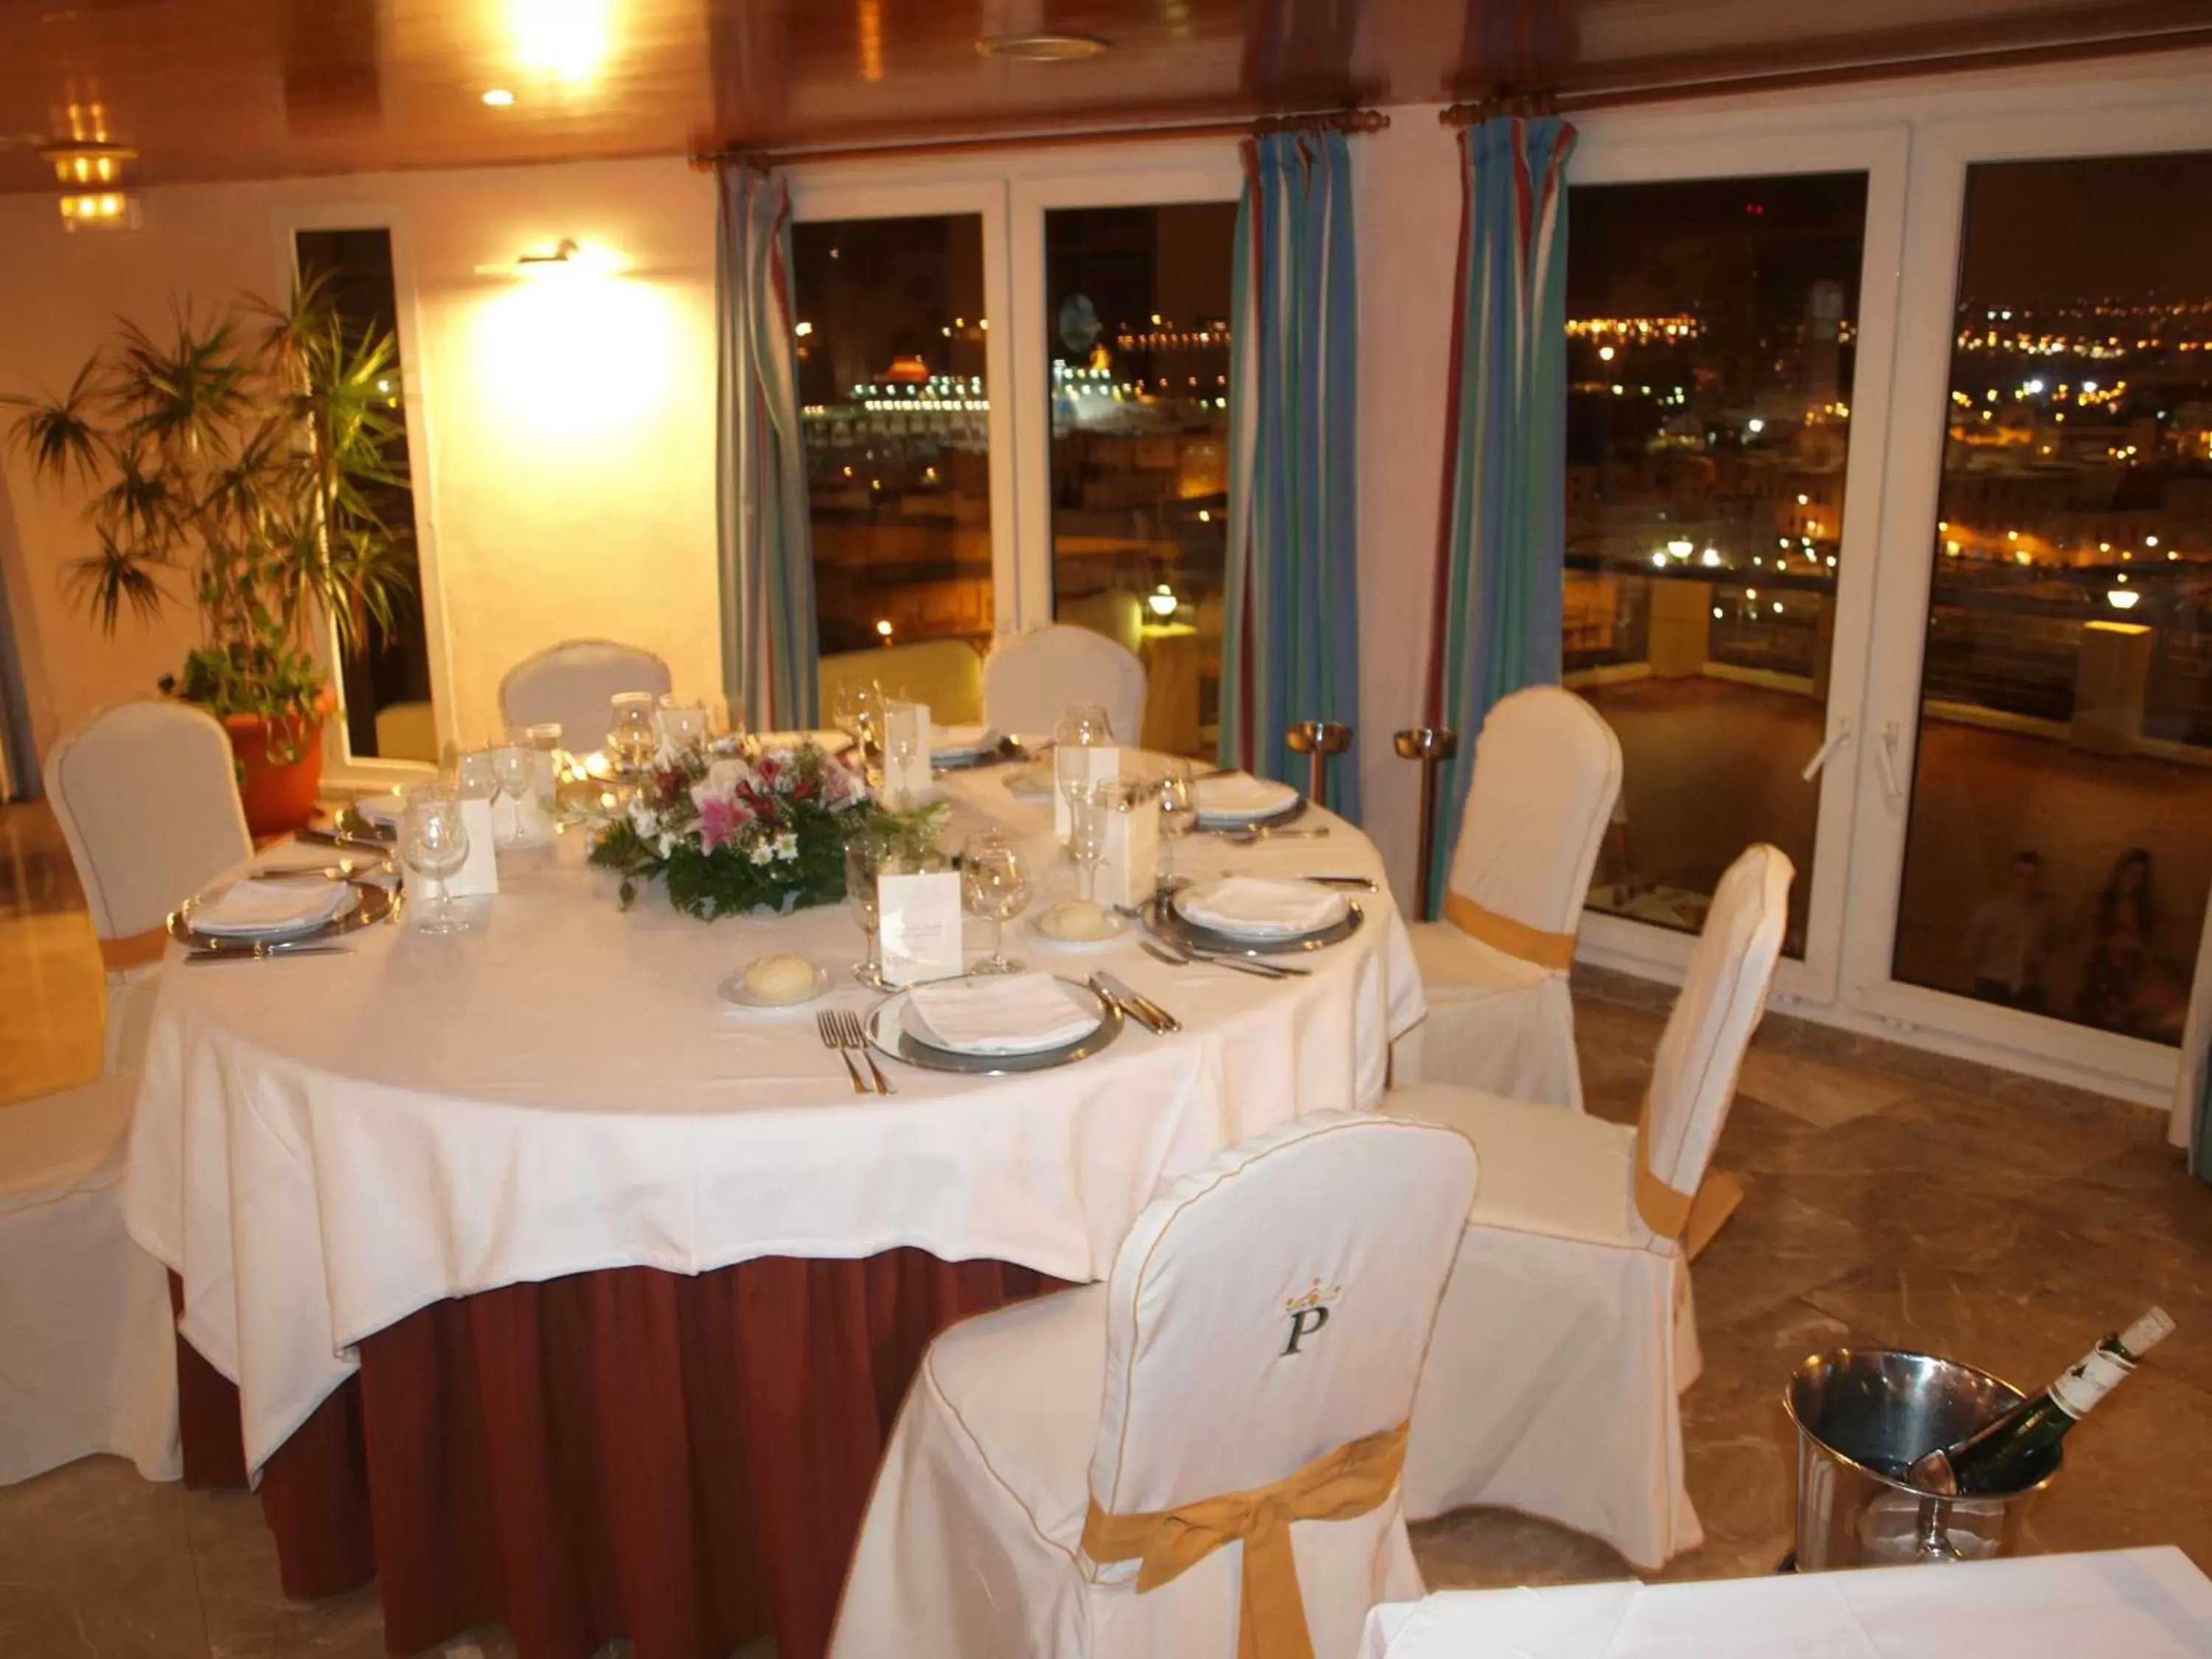 Banquet/Function facilities, Banquet Facilities in Parador de Melilla